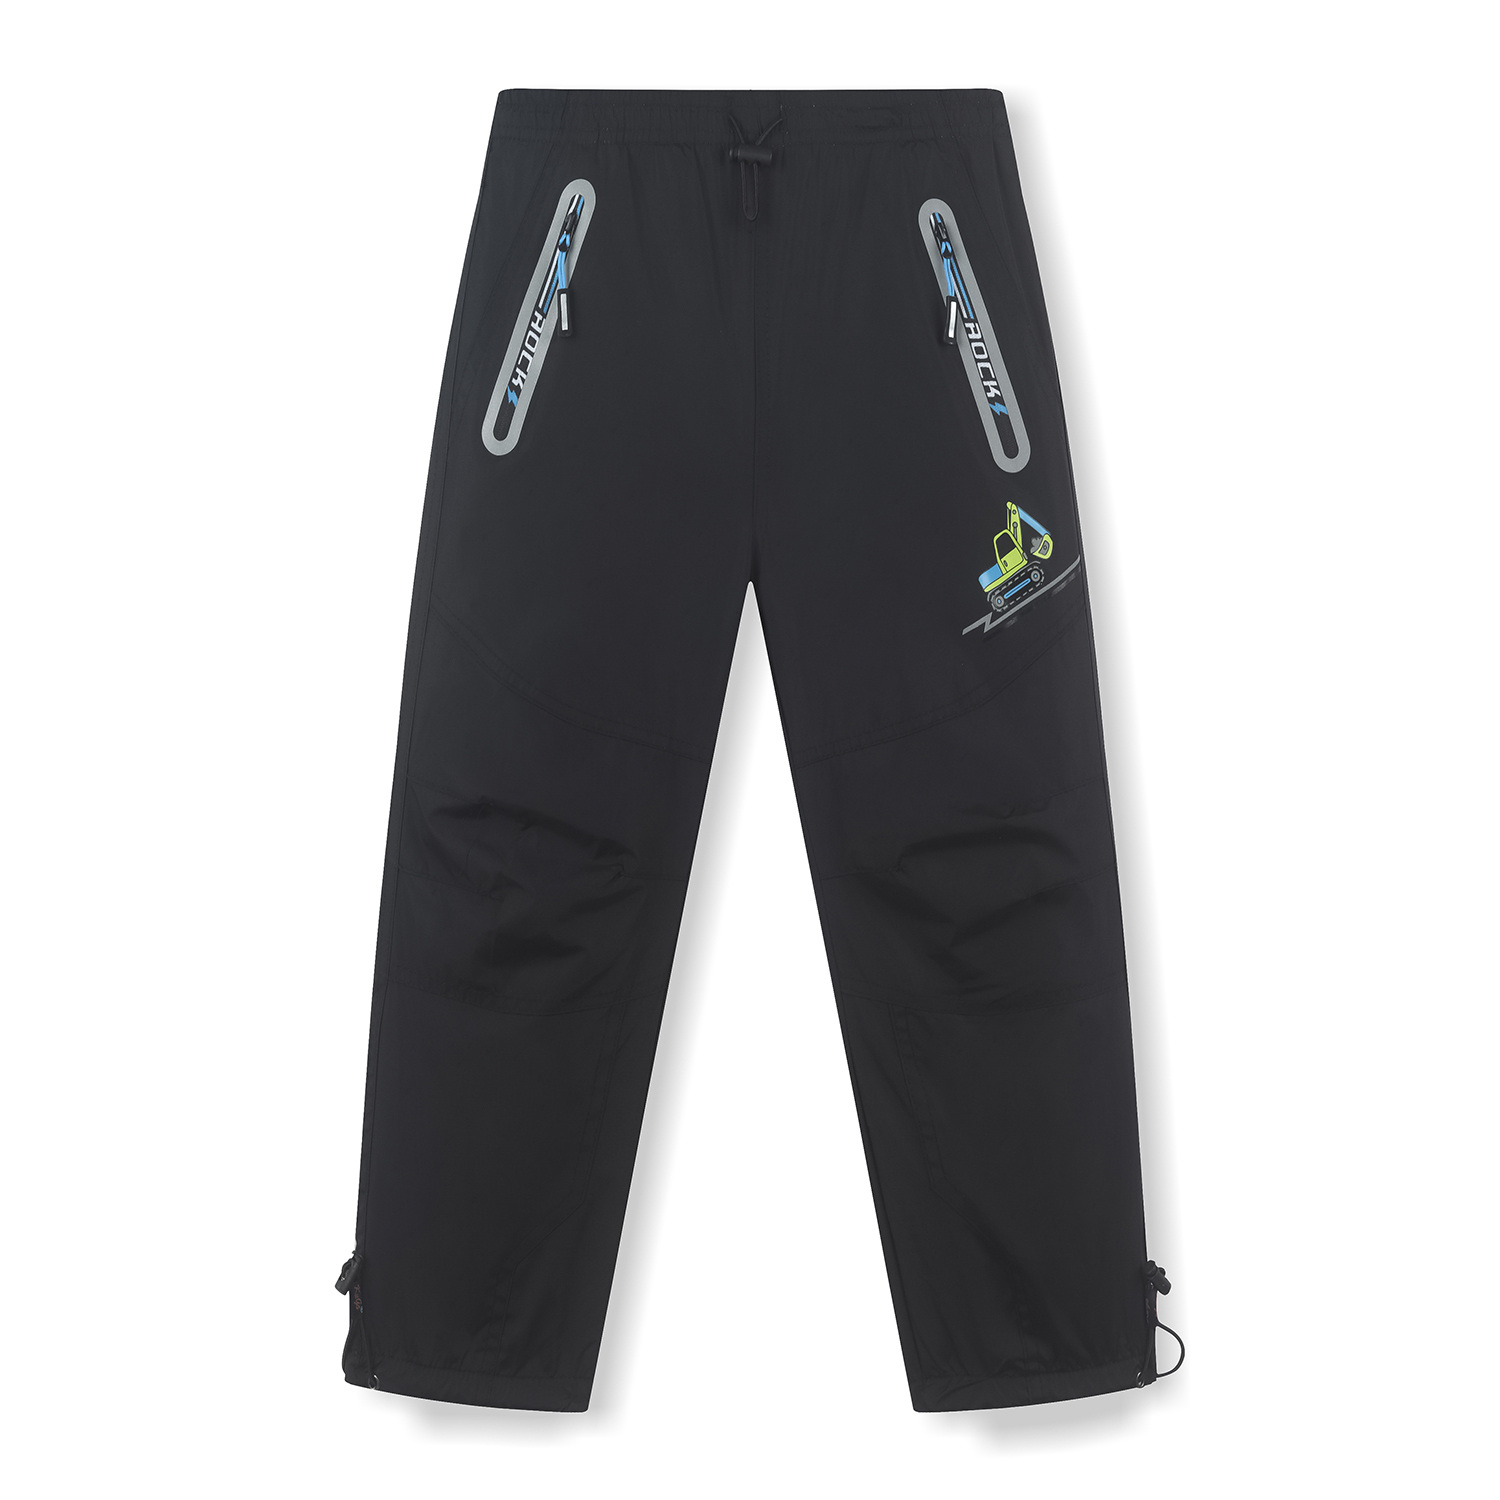 Chlapecké šusťákové kalhoty, zateplené - KUGO DK7093m, černá Barva: Černá, Velikost: 98